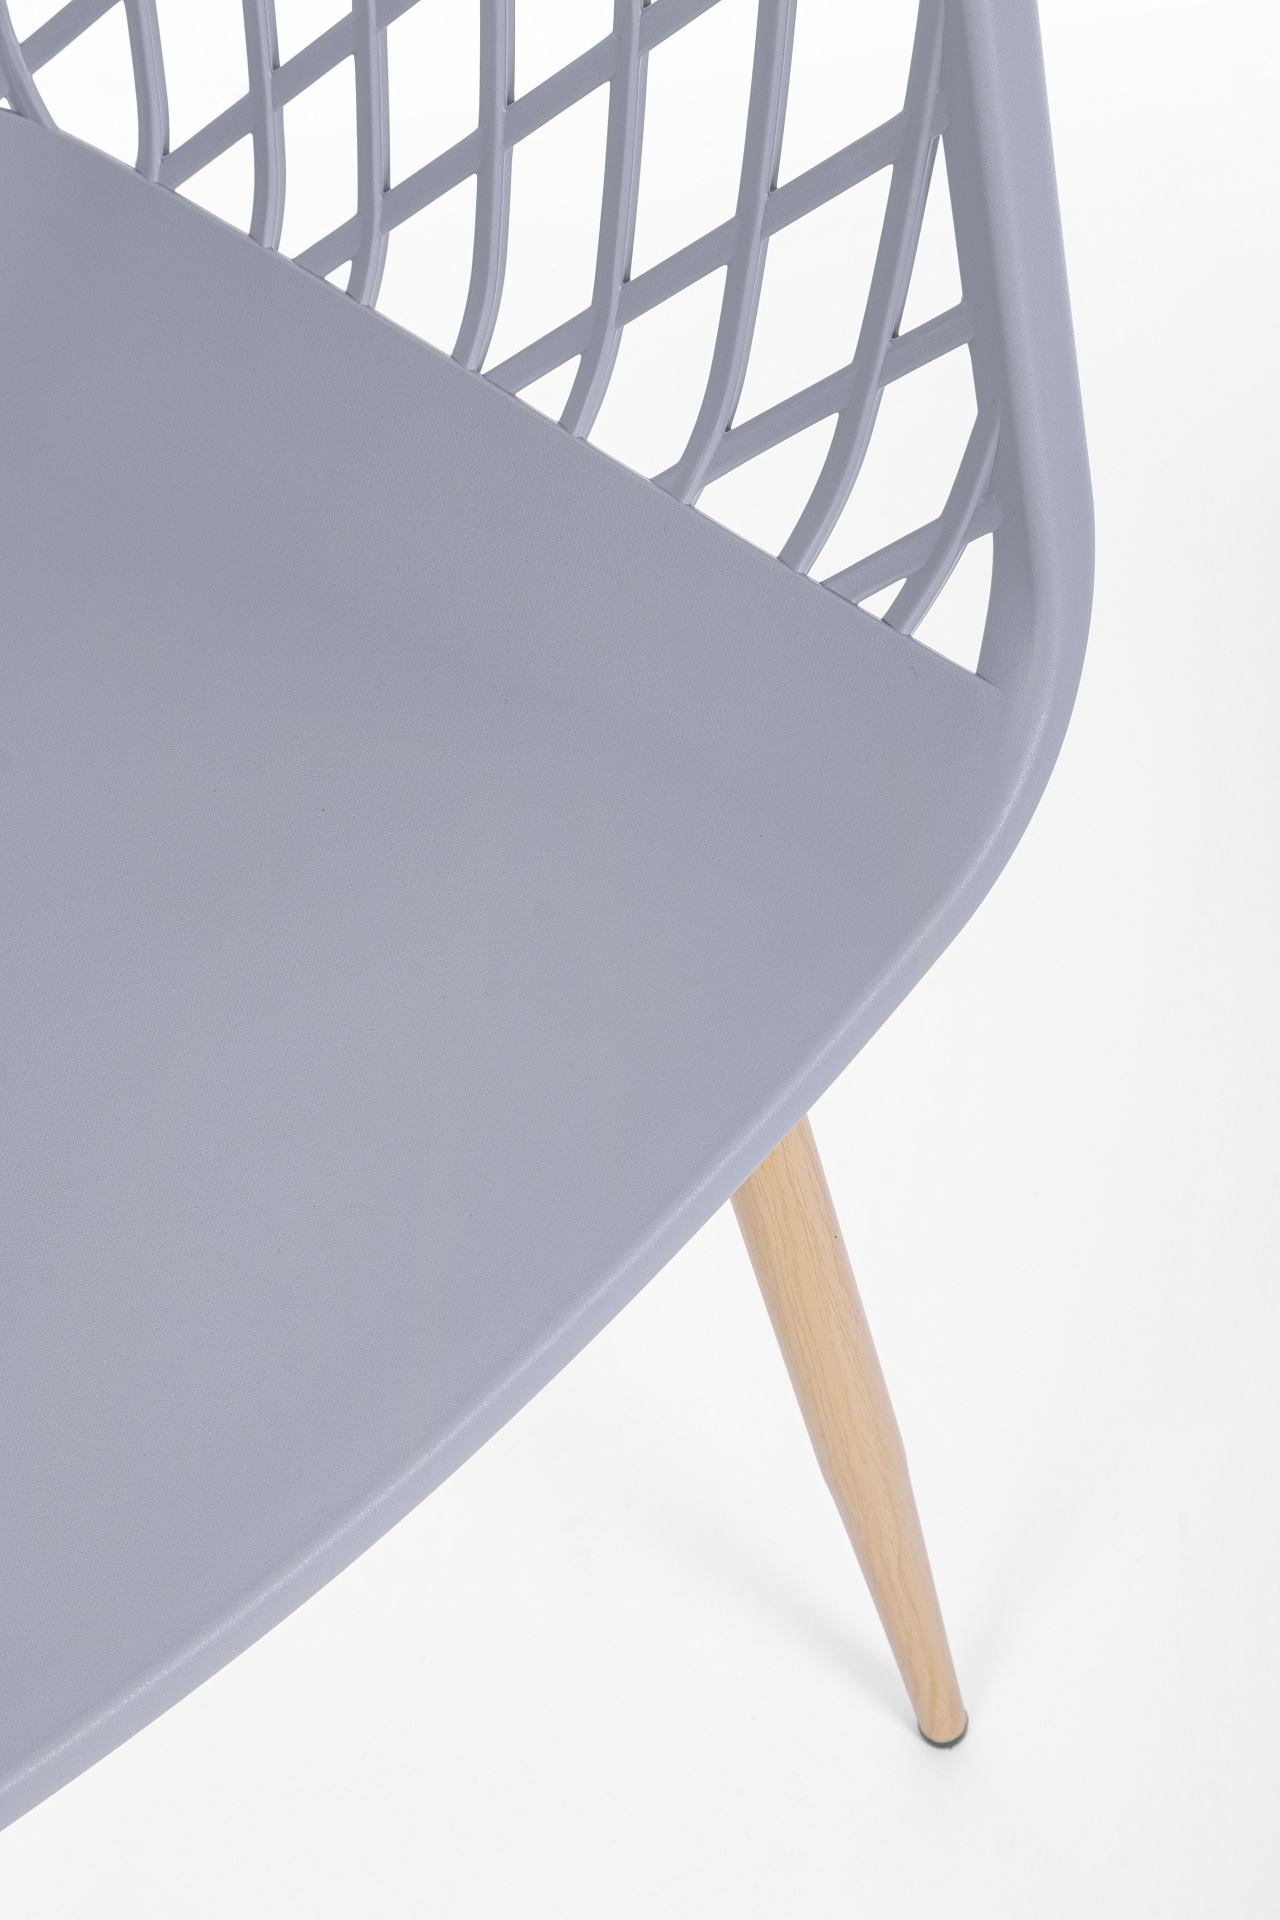 Der Stuhl Optik wurde aus Kunststoff gefertigt, welcher einen grauen Farbton besitzt. Das Gestell ist aus Metall und hat eine Holz-Optik. Das Design des Stuhls ist modern gehalten. Die Sitzhöhe beträgt 44 cm.